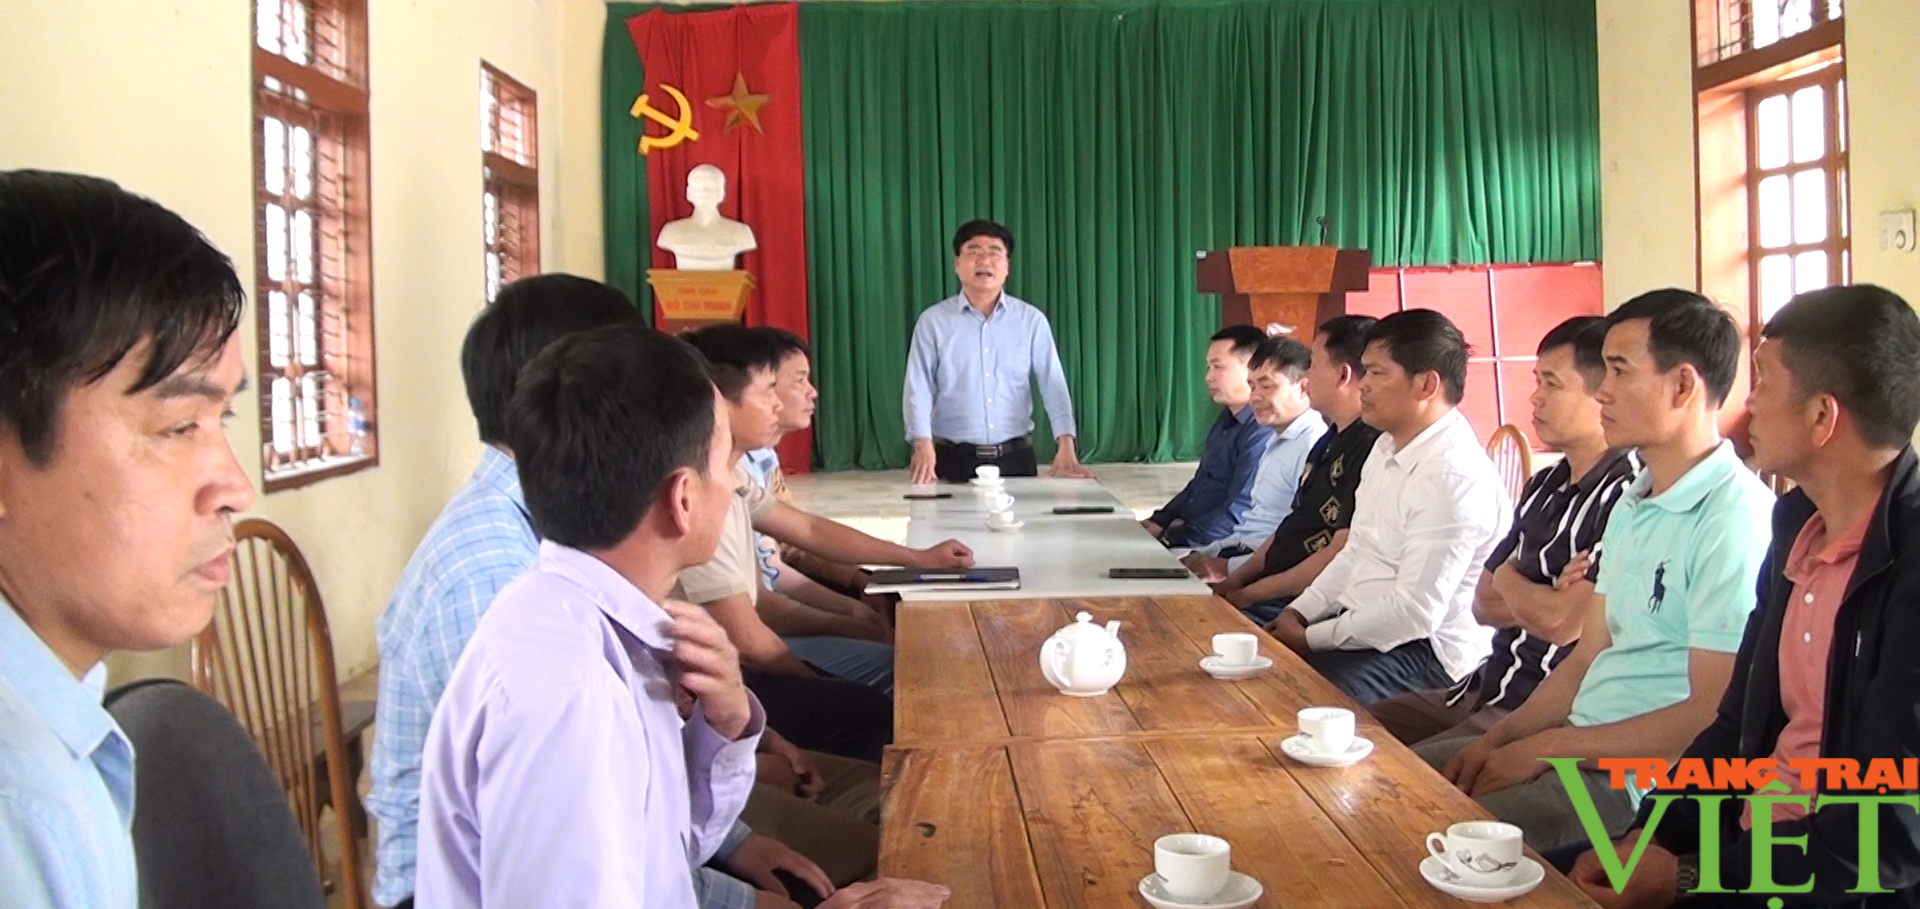 Dân vận khéo” trong xây dựng NTM ở bản vùng cao Sơn La | Dân Việt